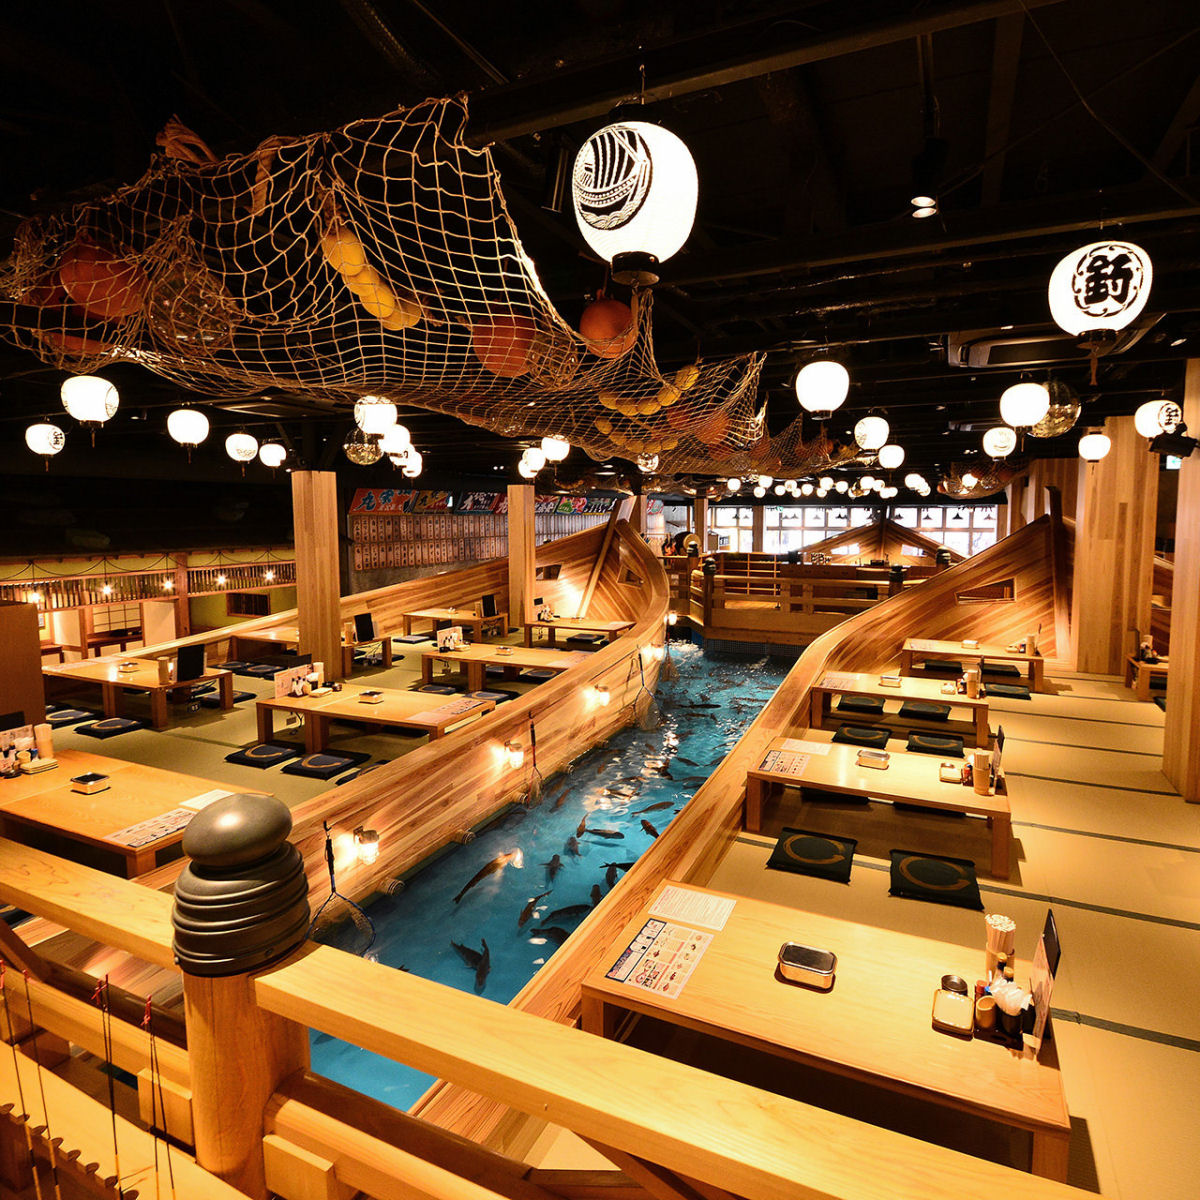 Este restaurante japons permite que os clientes pesquem seus prprios peixes para a refeio